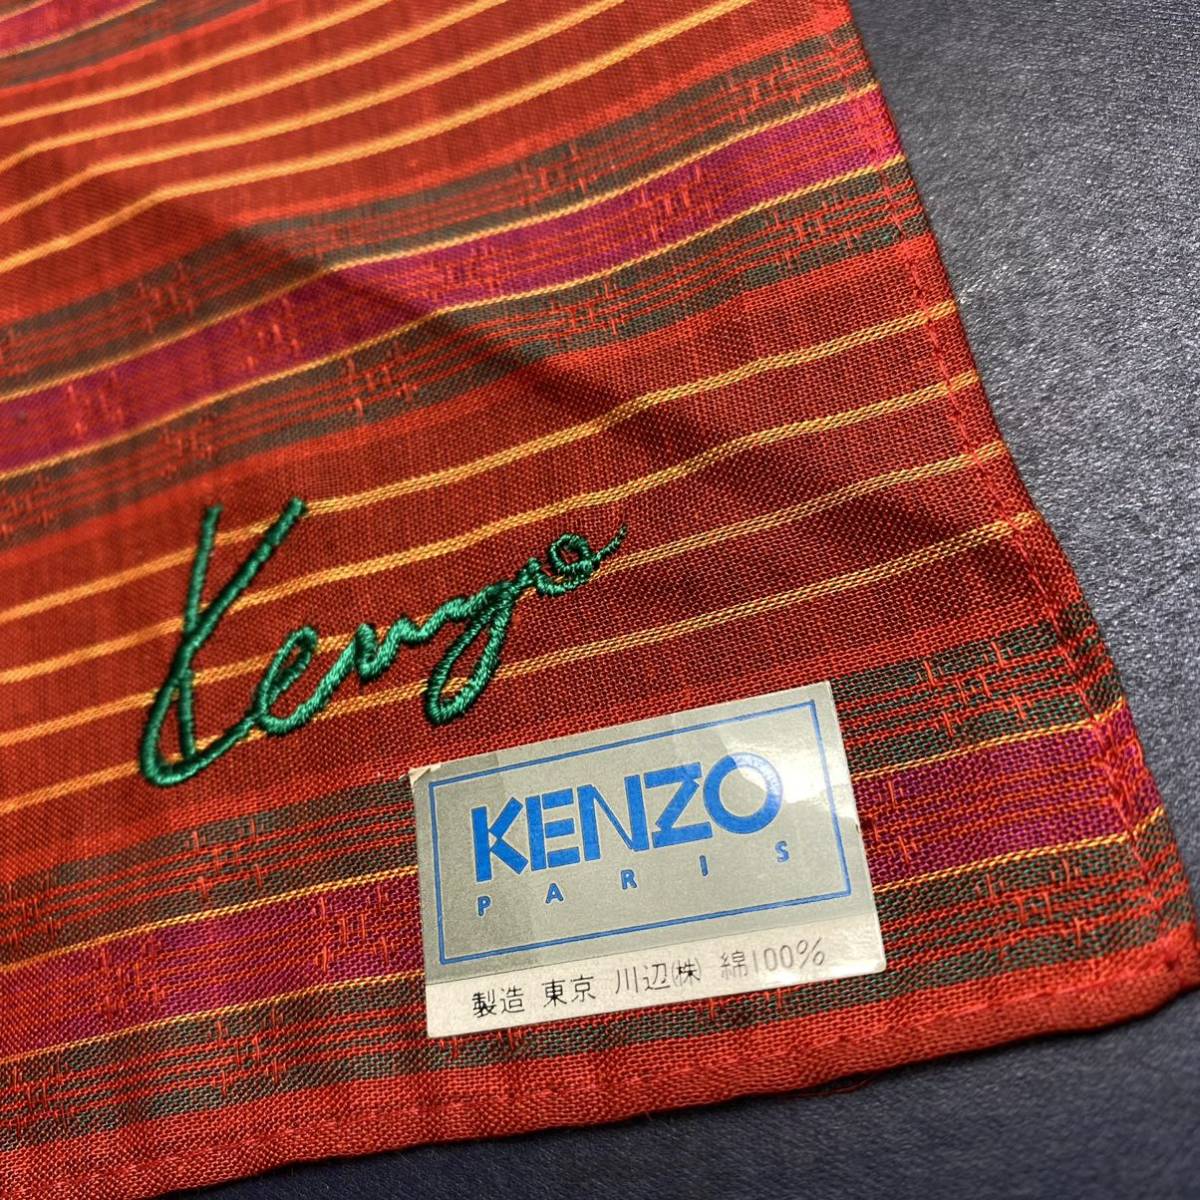  редкость новый товар не использовался с биркой цвет рисунок выдающийся атмосфера хороший река сторона производства KENZO Kenzo фольклор дизайн Jaguar do рисунок Kenzo Logo вышивка носовой платок бандана 